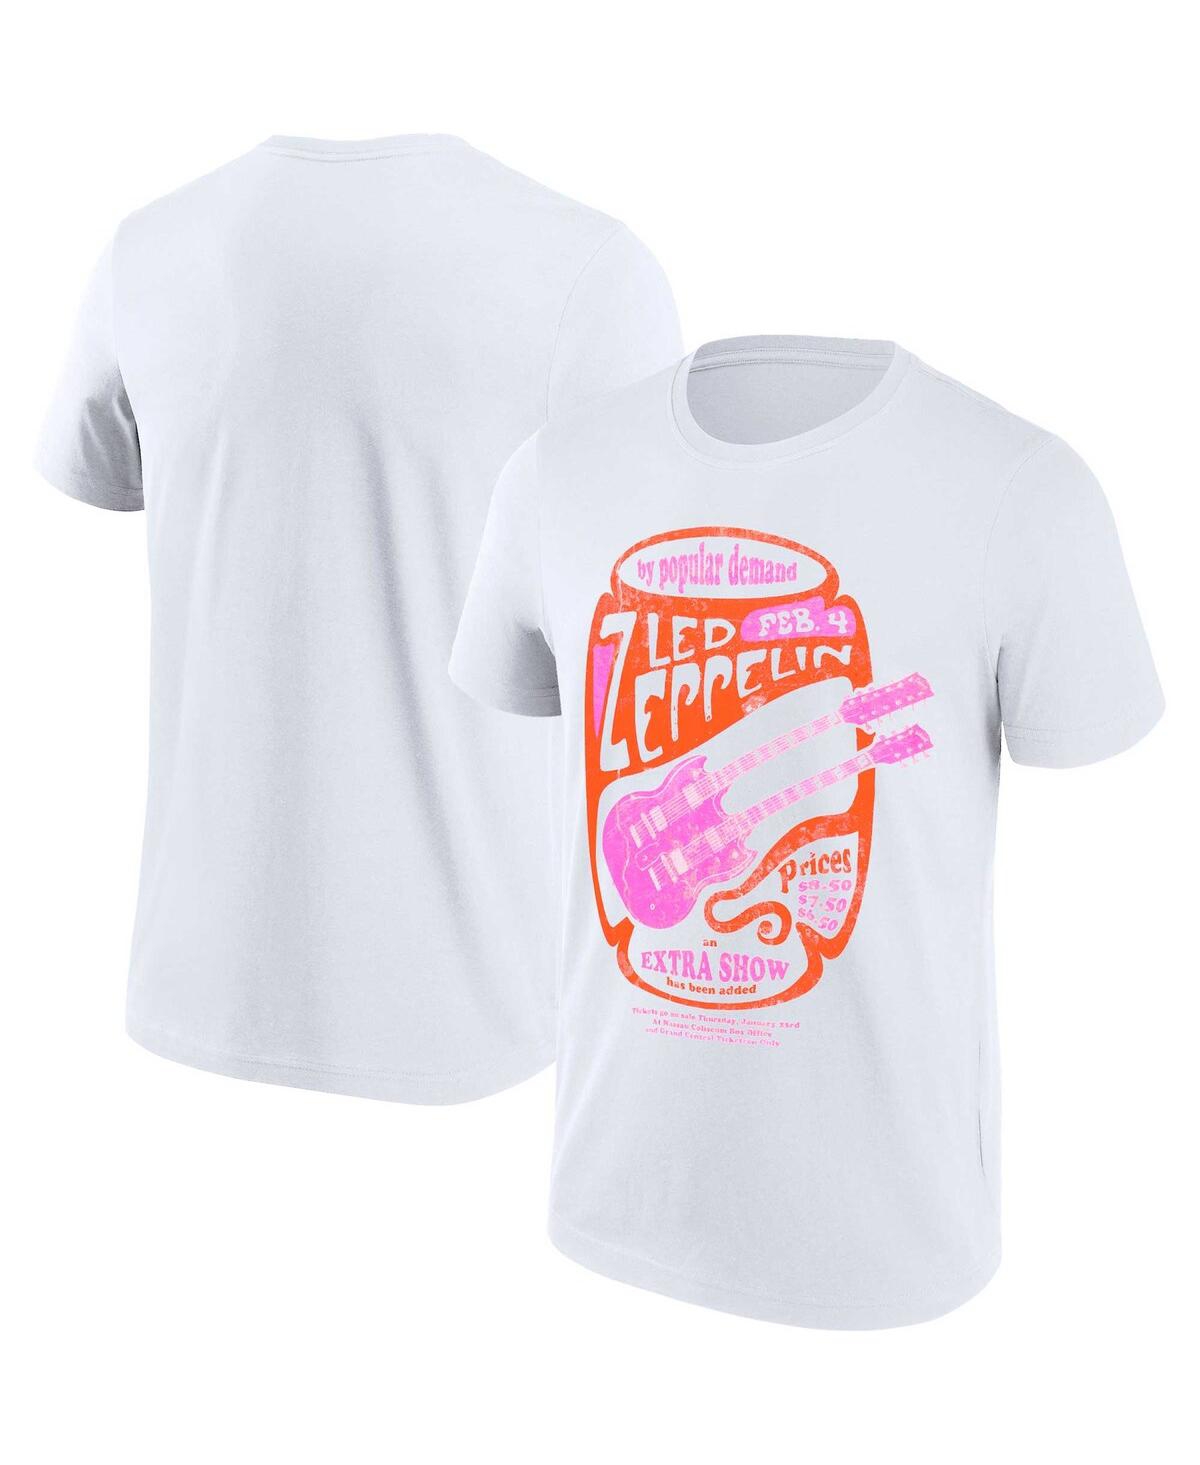 Men's and Women's White Led Zeppelin Graphic T-Shirt - White